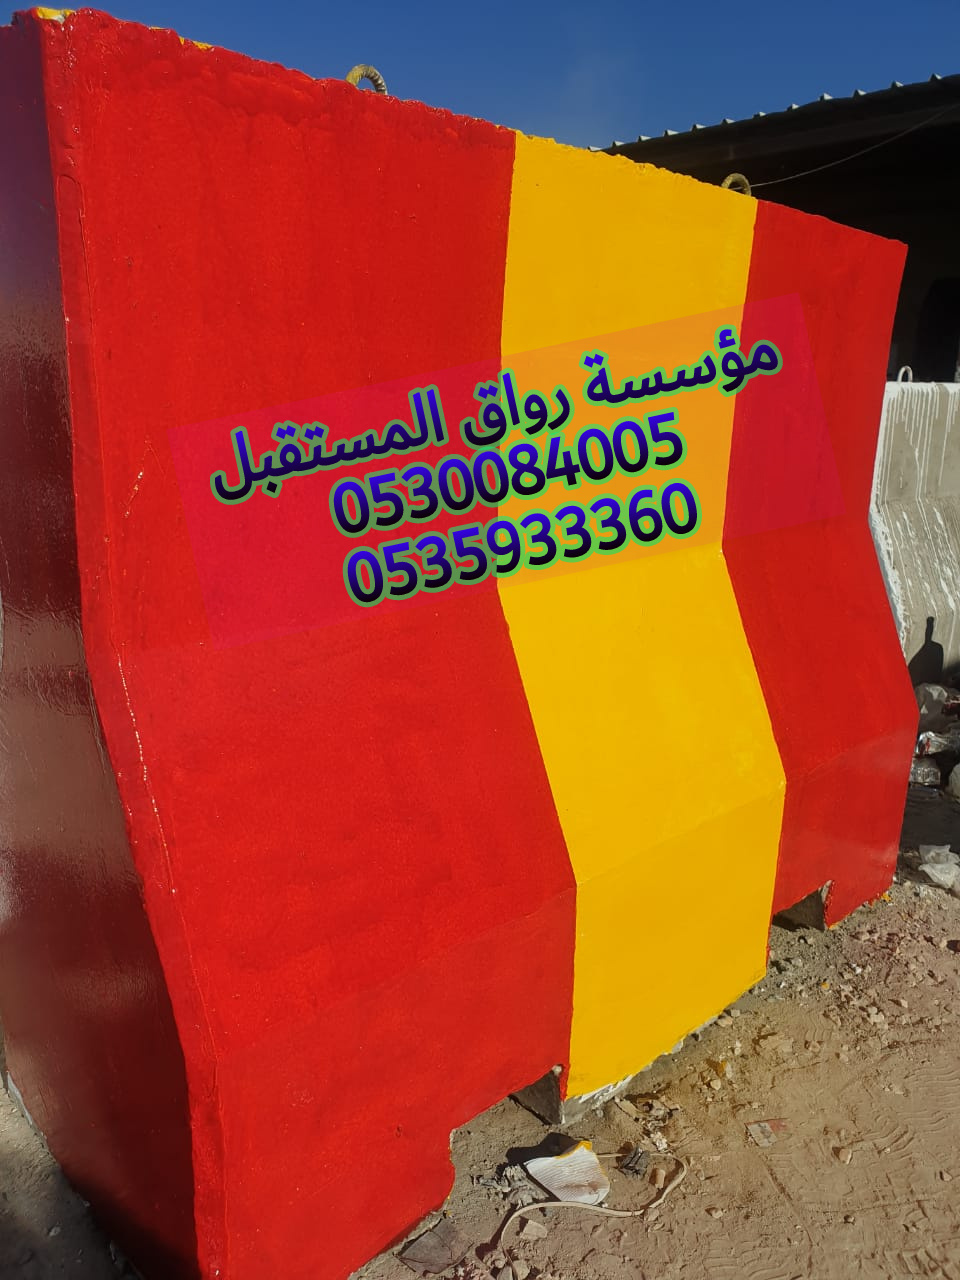 مؤسسة رواق المستقبل لبيع الحواجز والمصدات والمناهيل الخرسانيه في الرياض 0530084005 P_1503s8q600